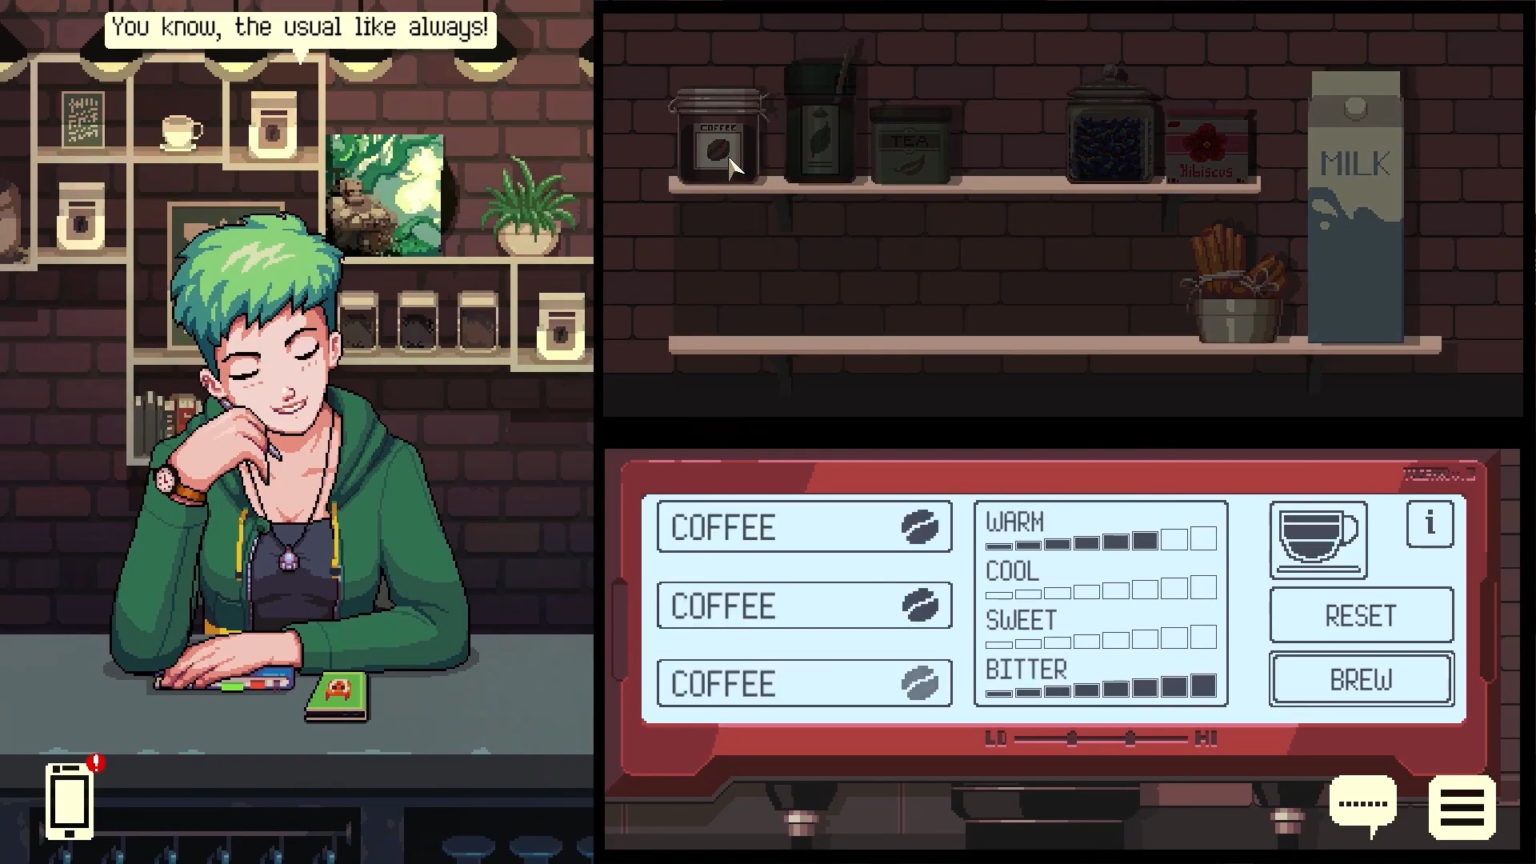 Tangkapan layar dari Coffee Talk Episode 2 Hibiscus and Butterly, menampilkan antarmuka pembuat kopi saat pelanggan duduk di konter